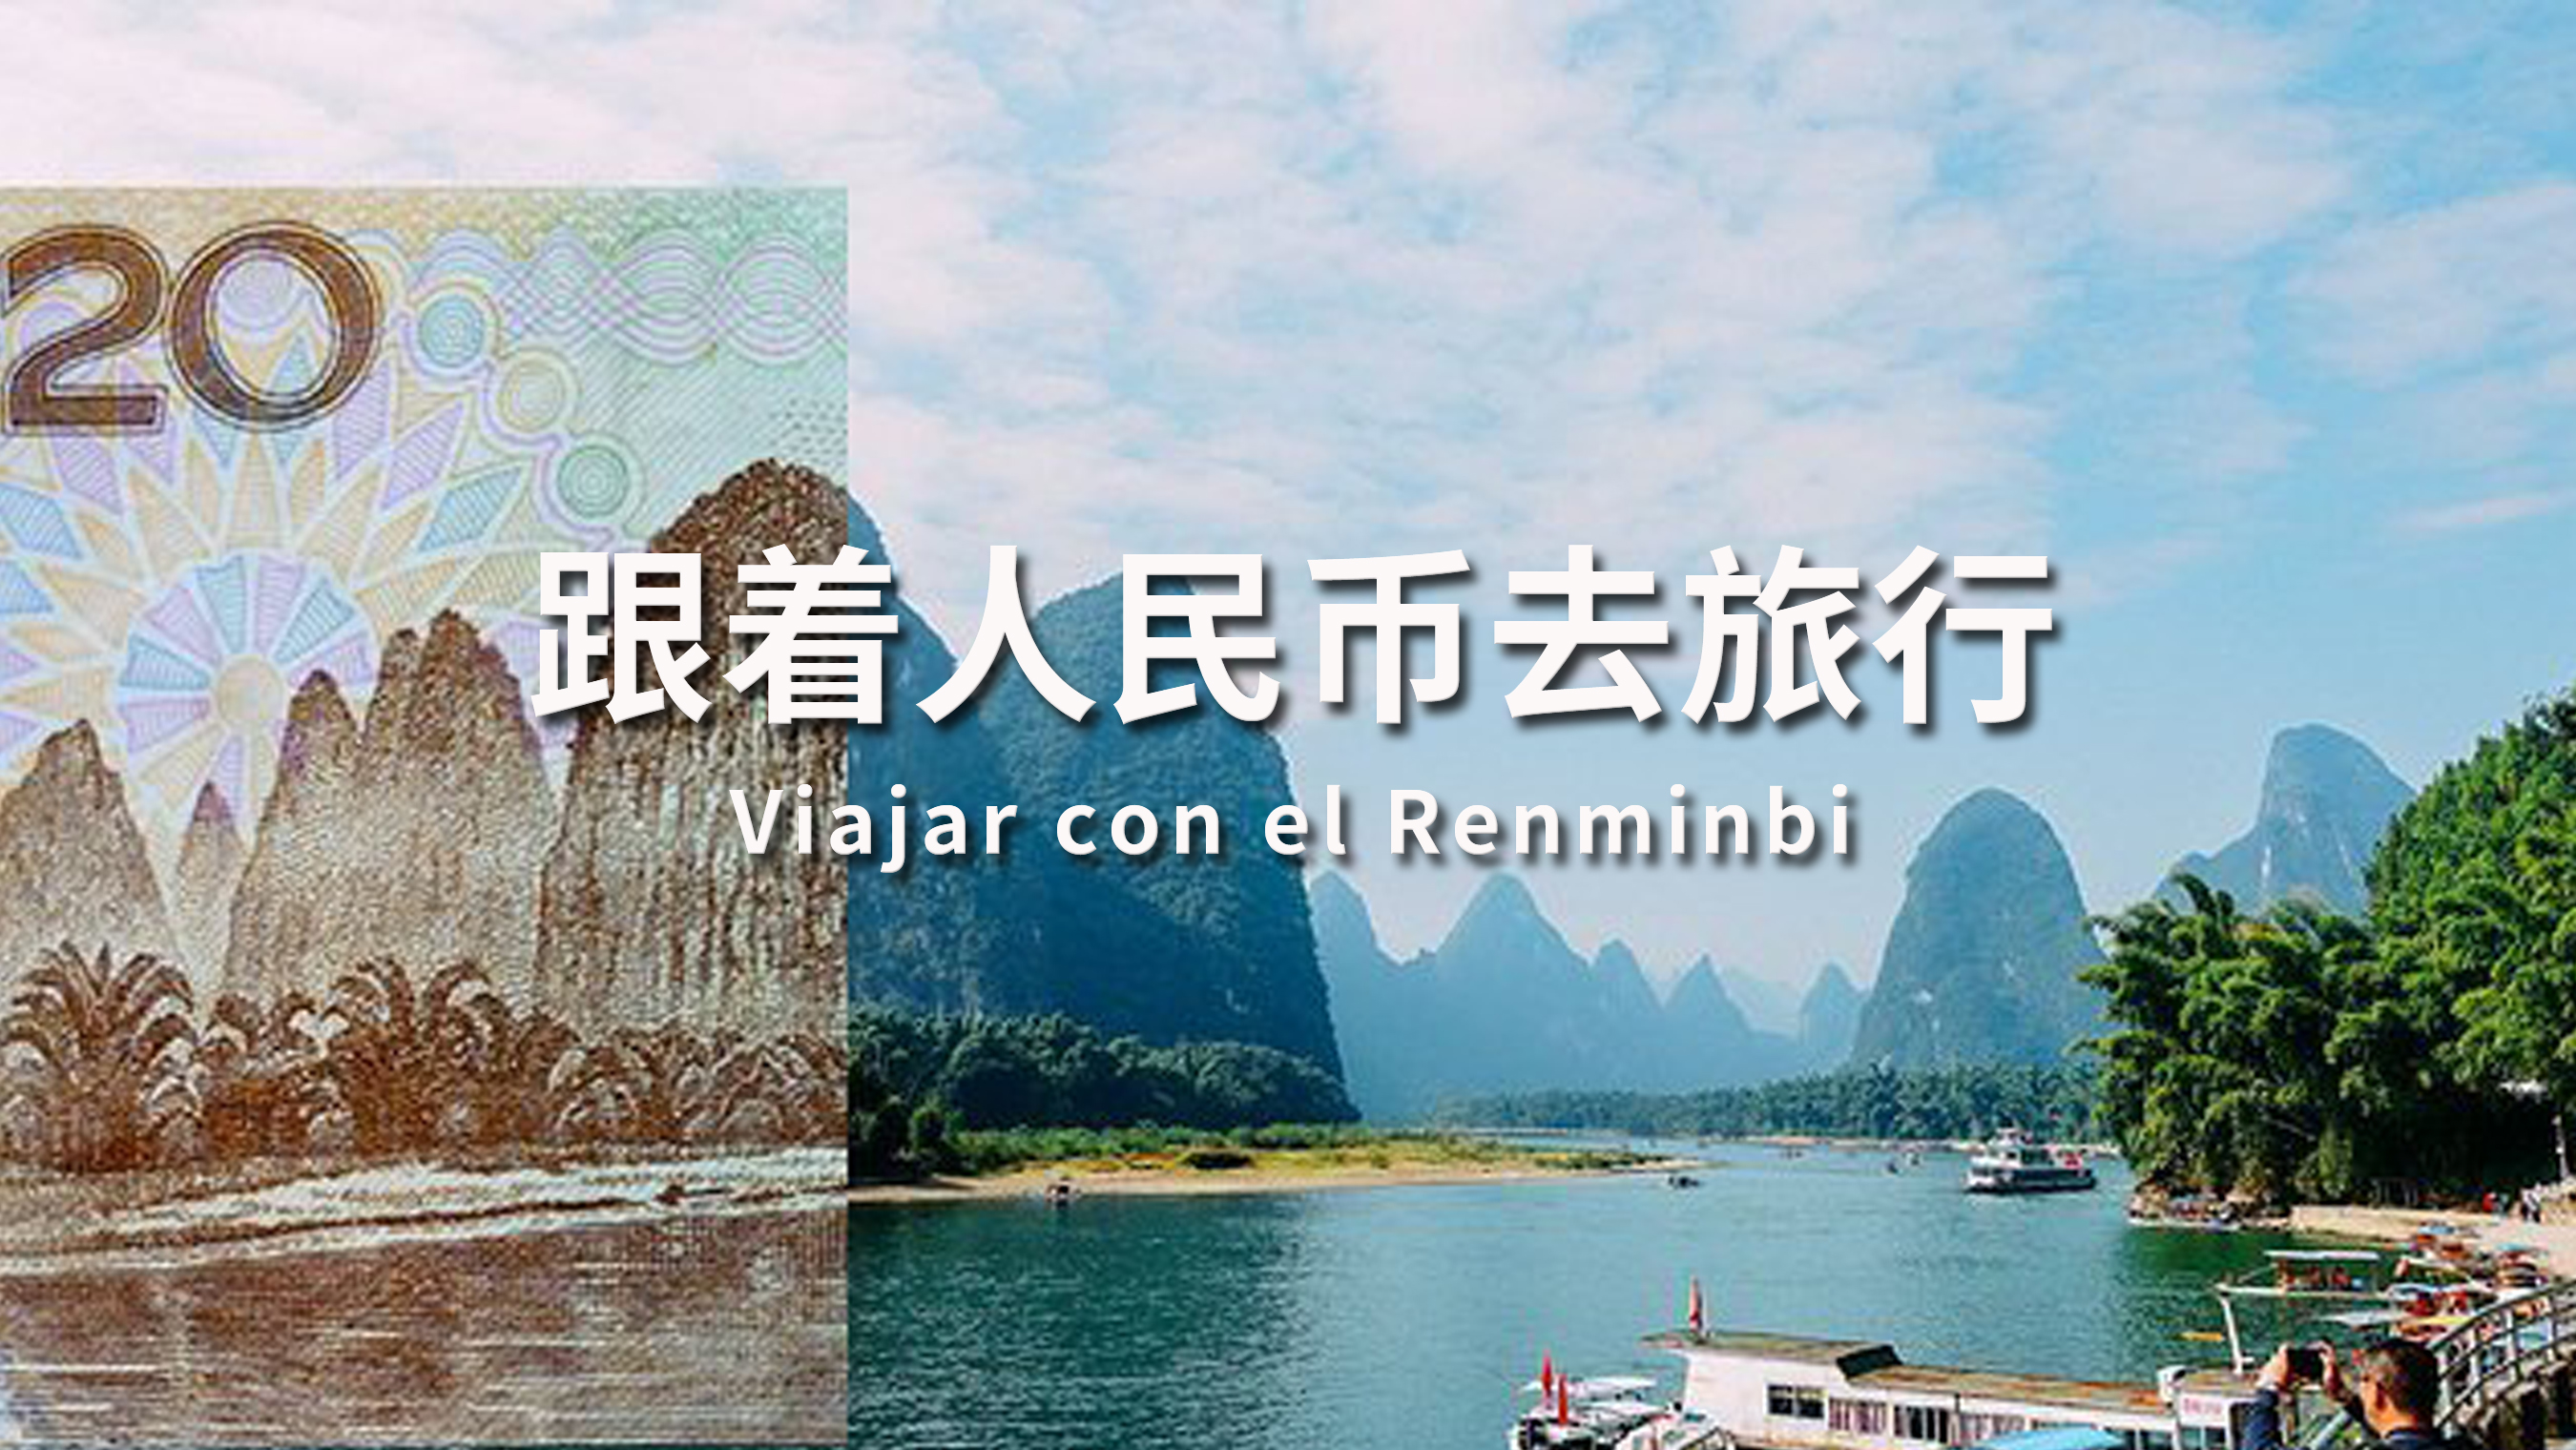 Viajar con el Renminbi